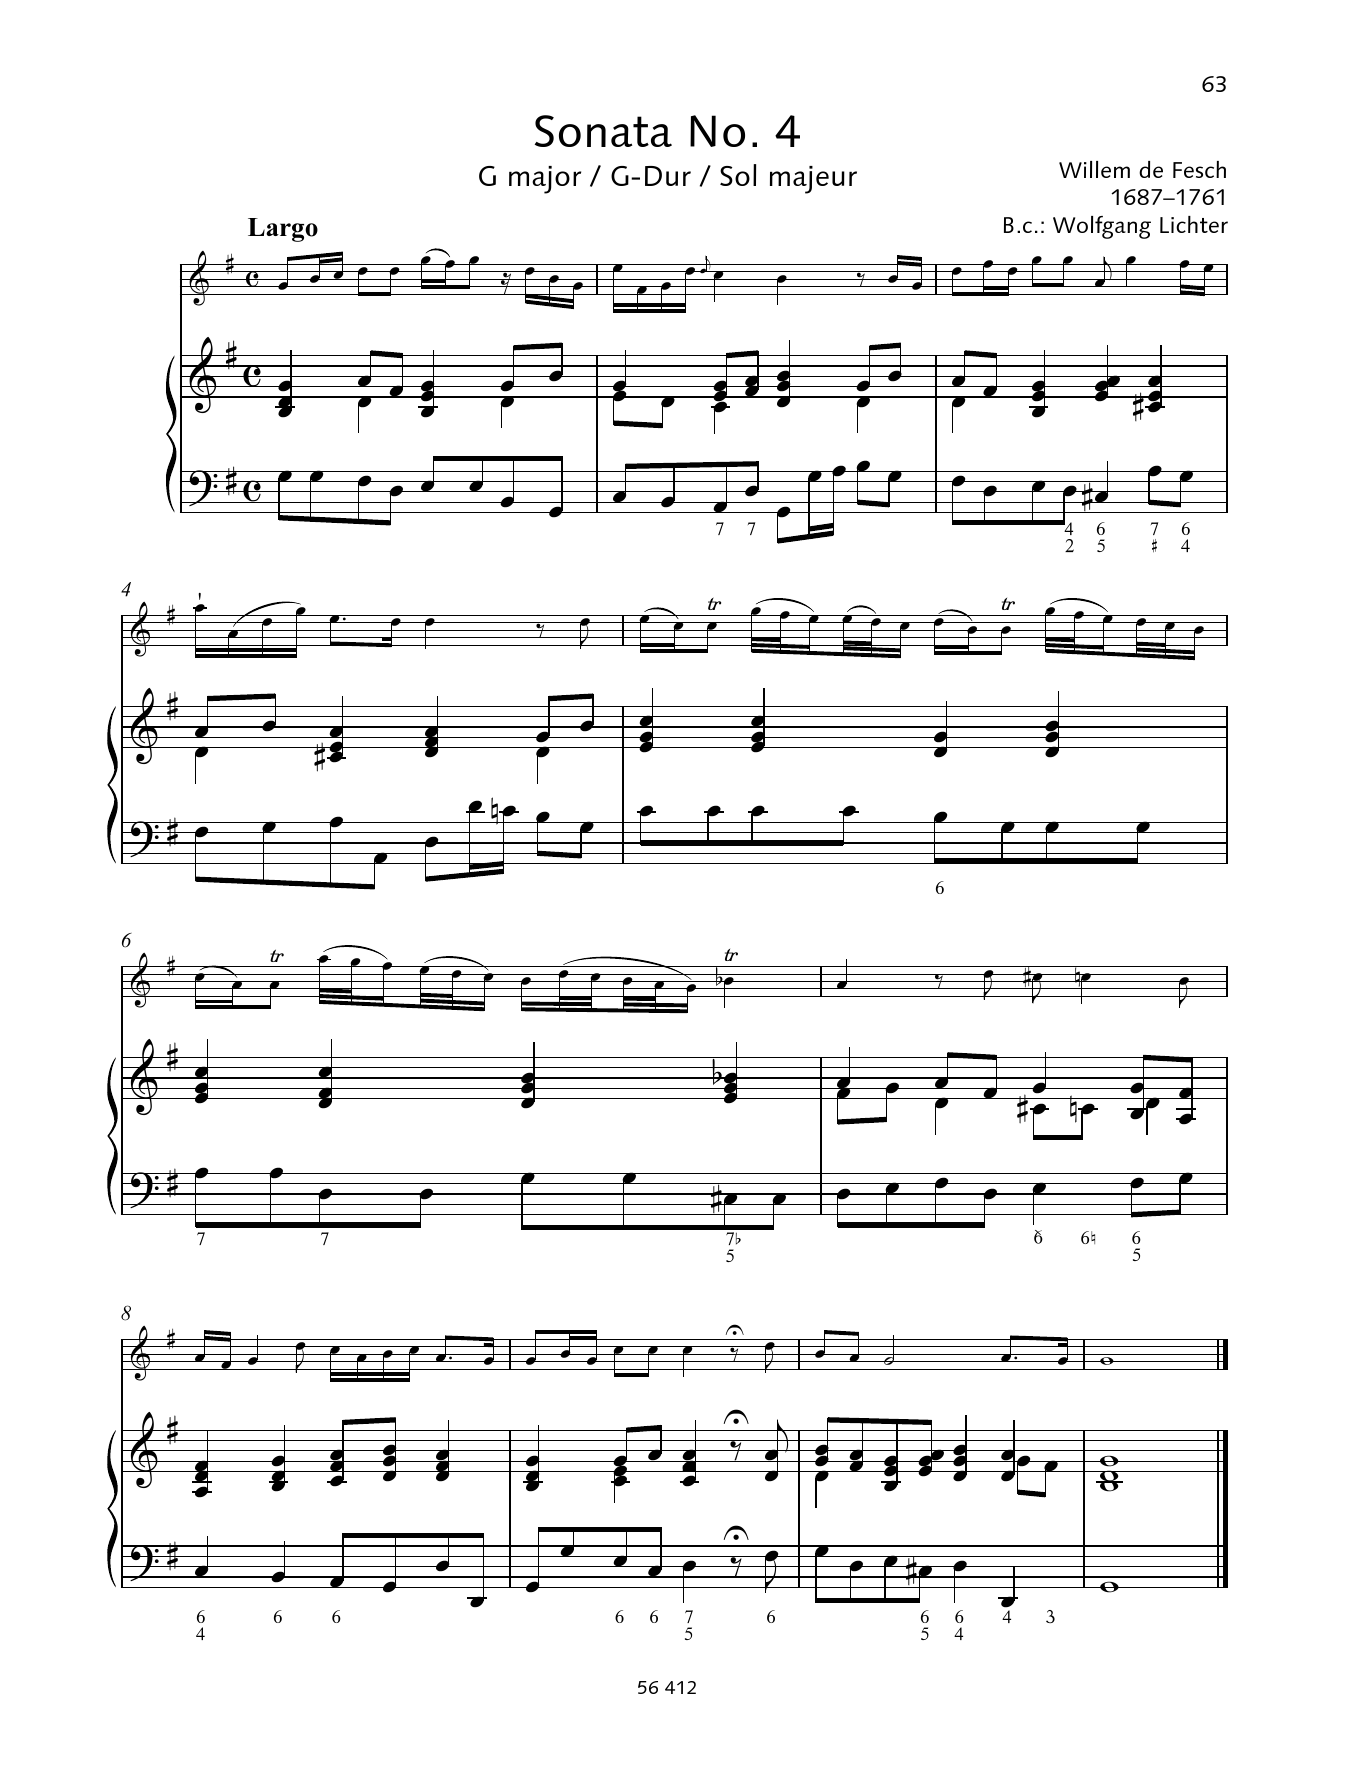 Sonata No. 4 G major sheet music